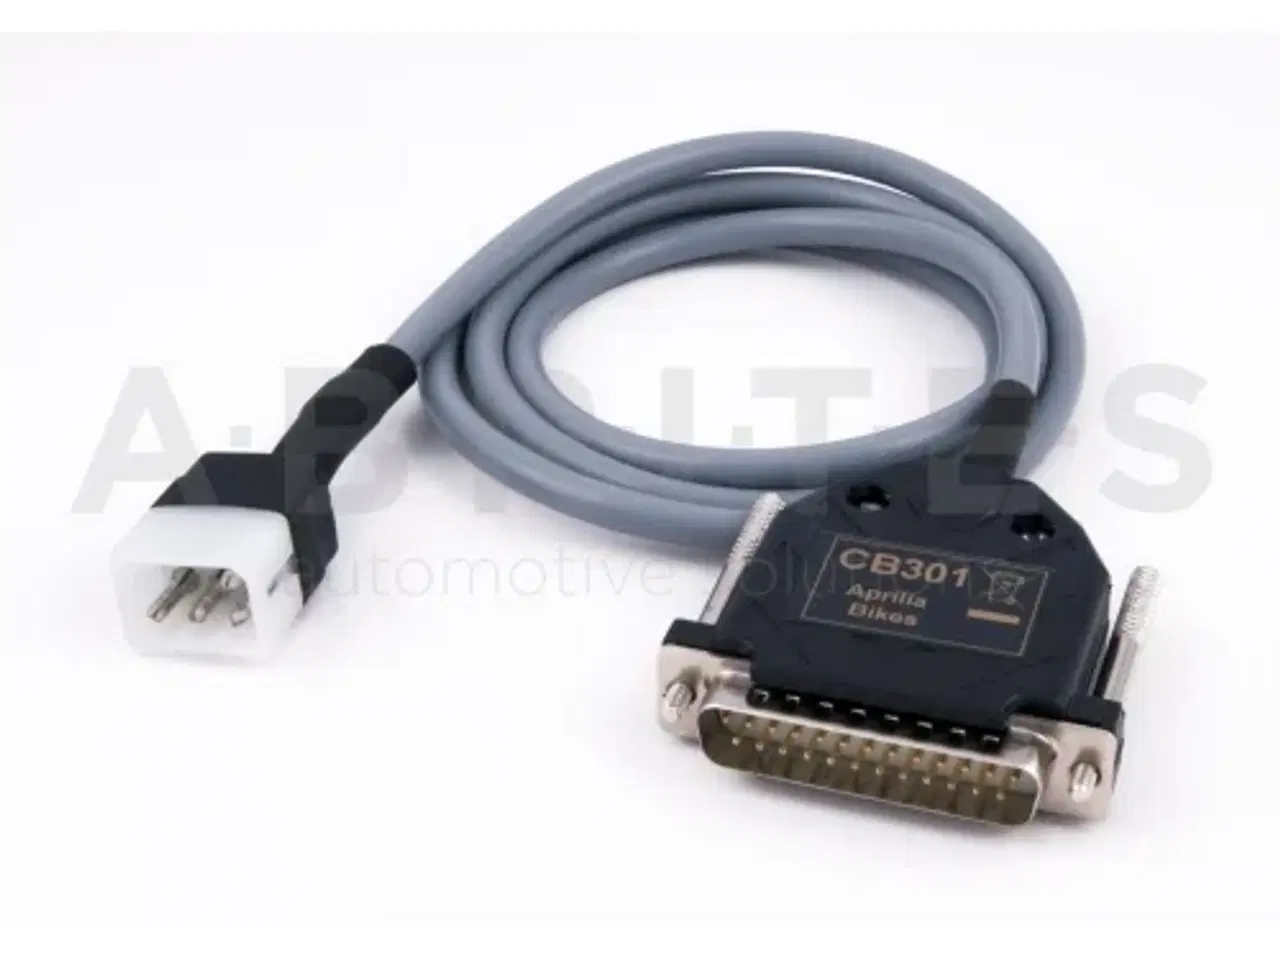 Billede 1 - UDSTYR TIL AVDI køb ekstra udstyr til din AVDI her (hardware)